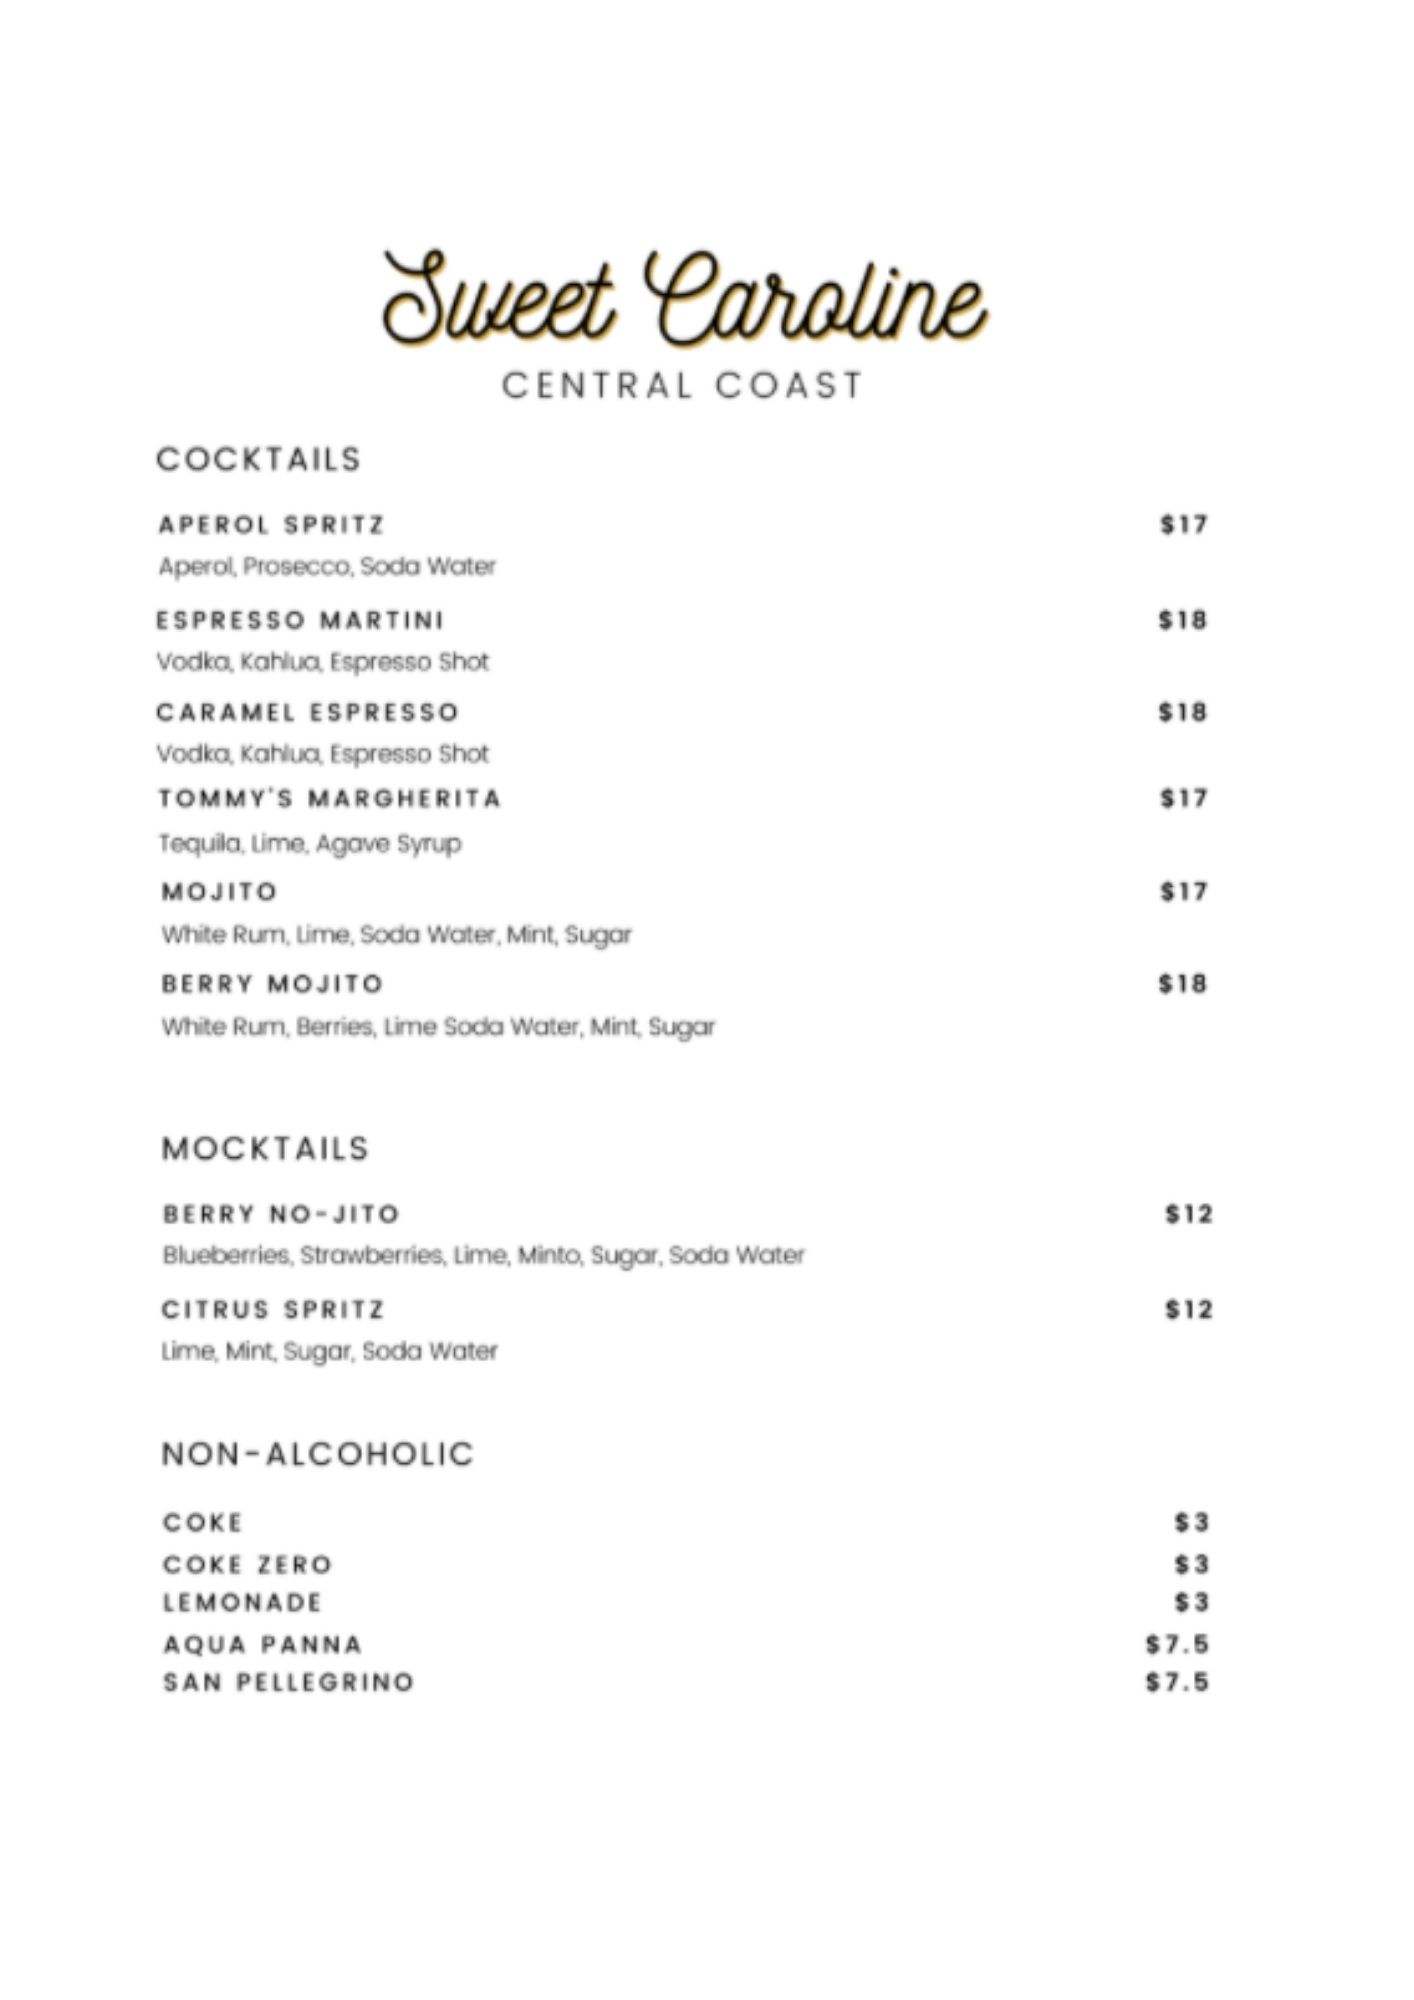 Sweet Caroline Cafe East Gosford Central Coast - NSW | OBZ Online Business Zone